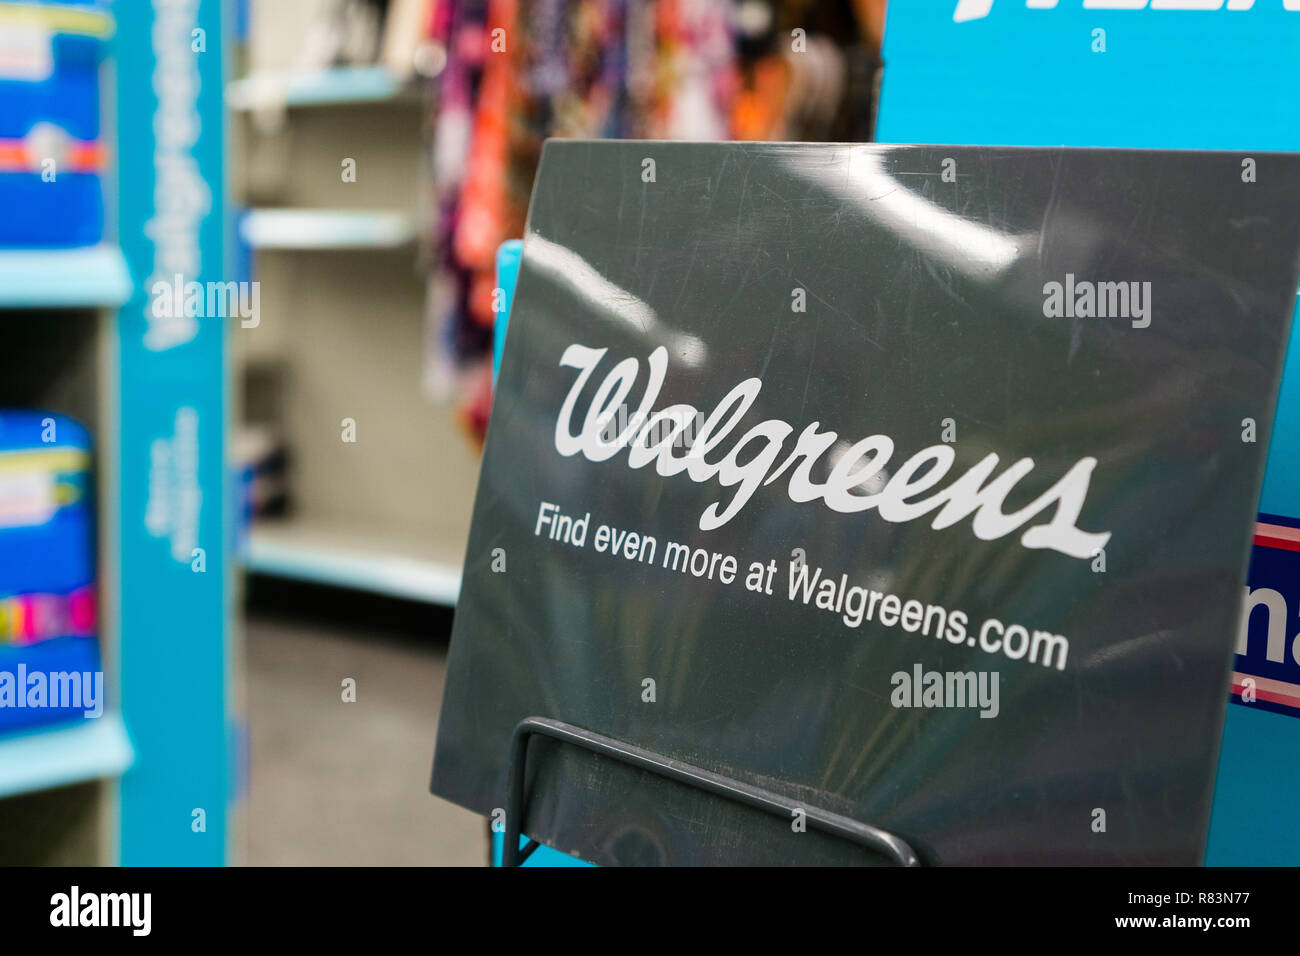 14 août 2018 Sunnyvale / CA / USA - Walgreens logo affiché à l'intérieur de l'un de leurs emplacements dans le sud de San Francisco bay area Banque D'Images